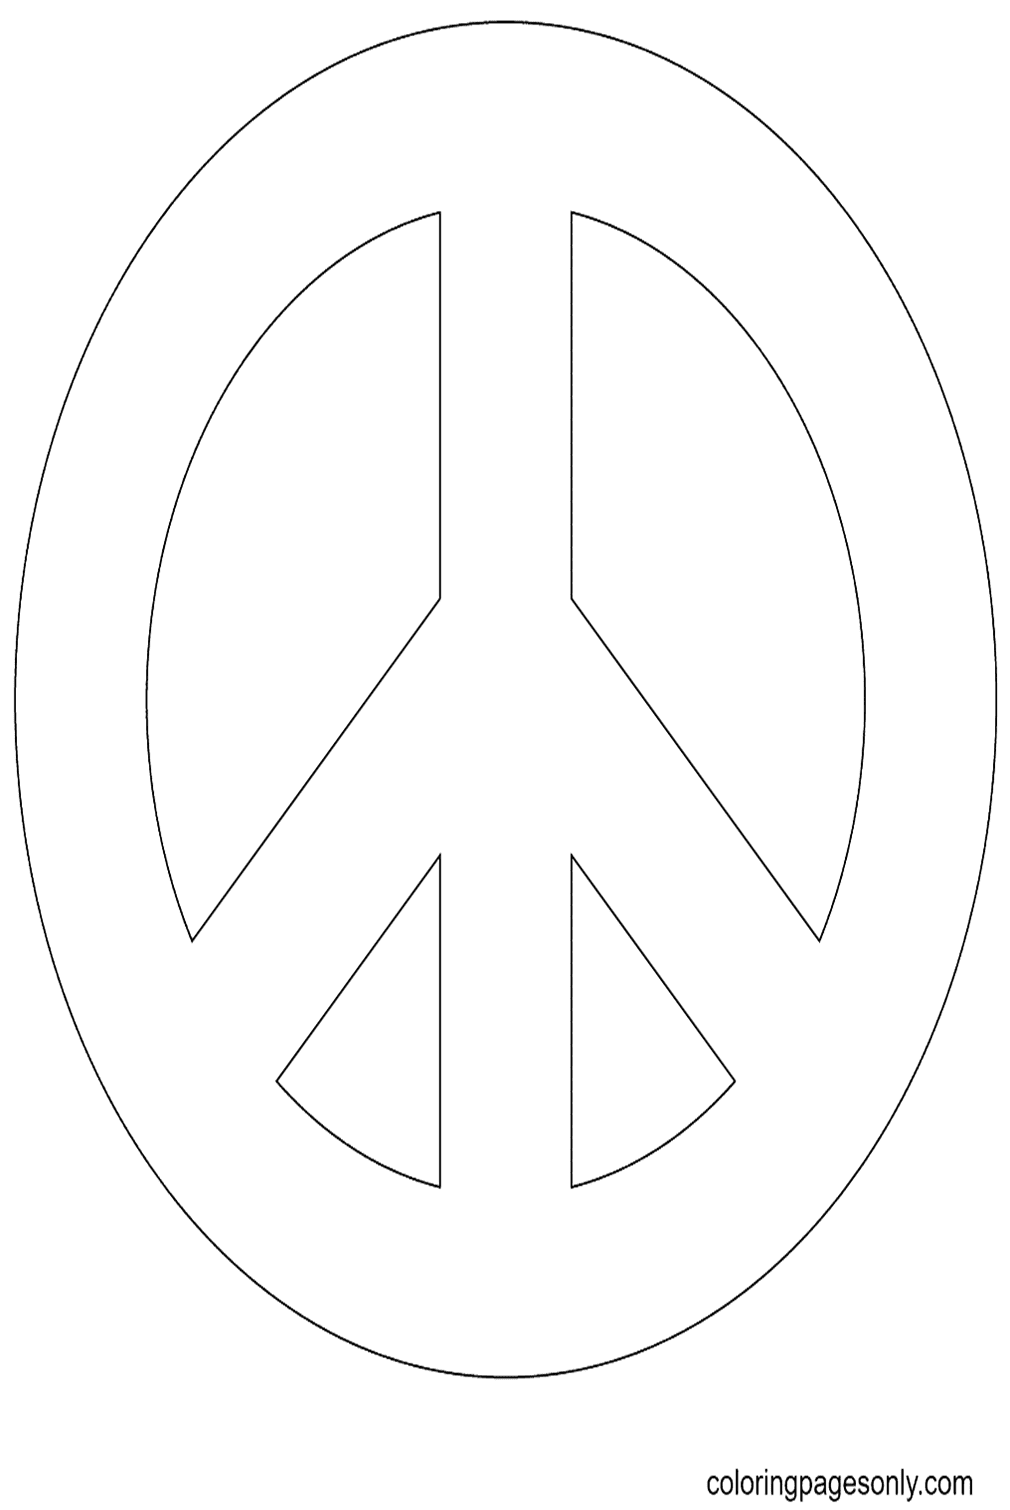 علامة السلام من اليوم العالمي للسلام